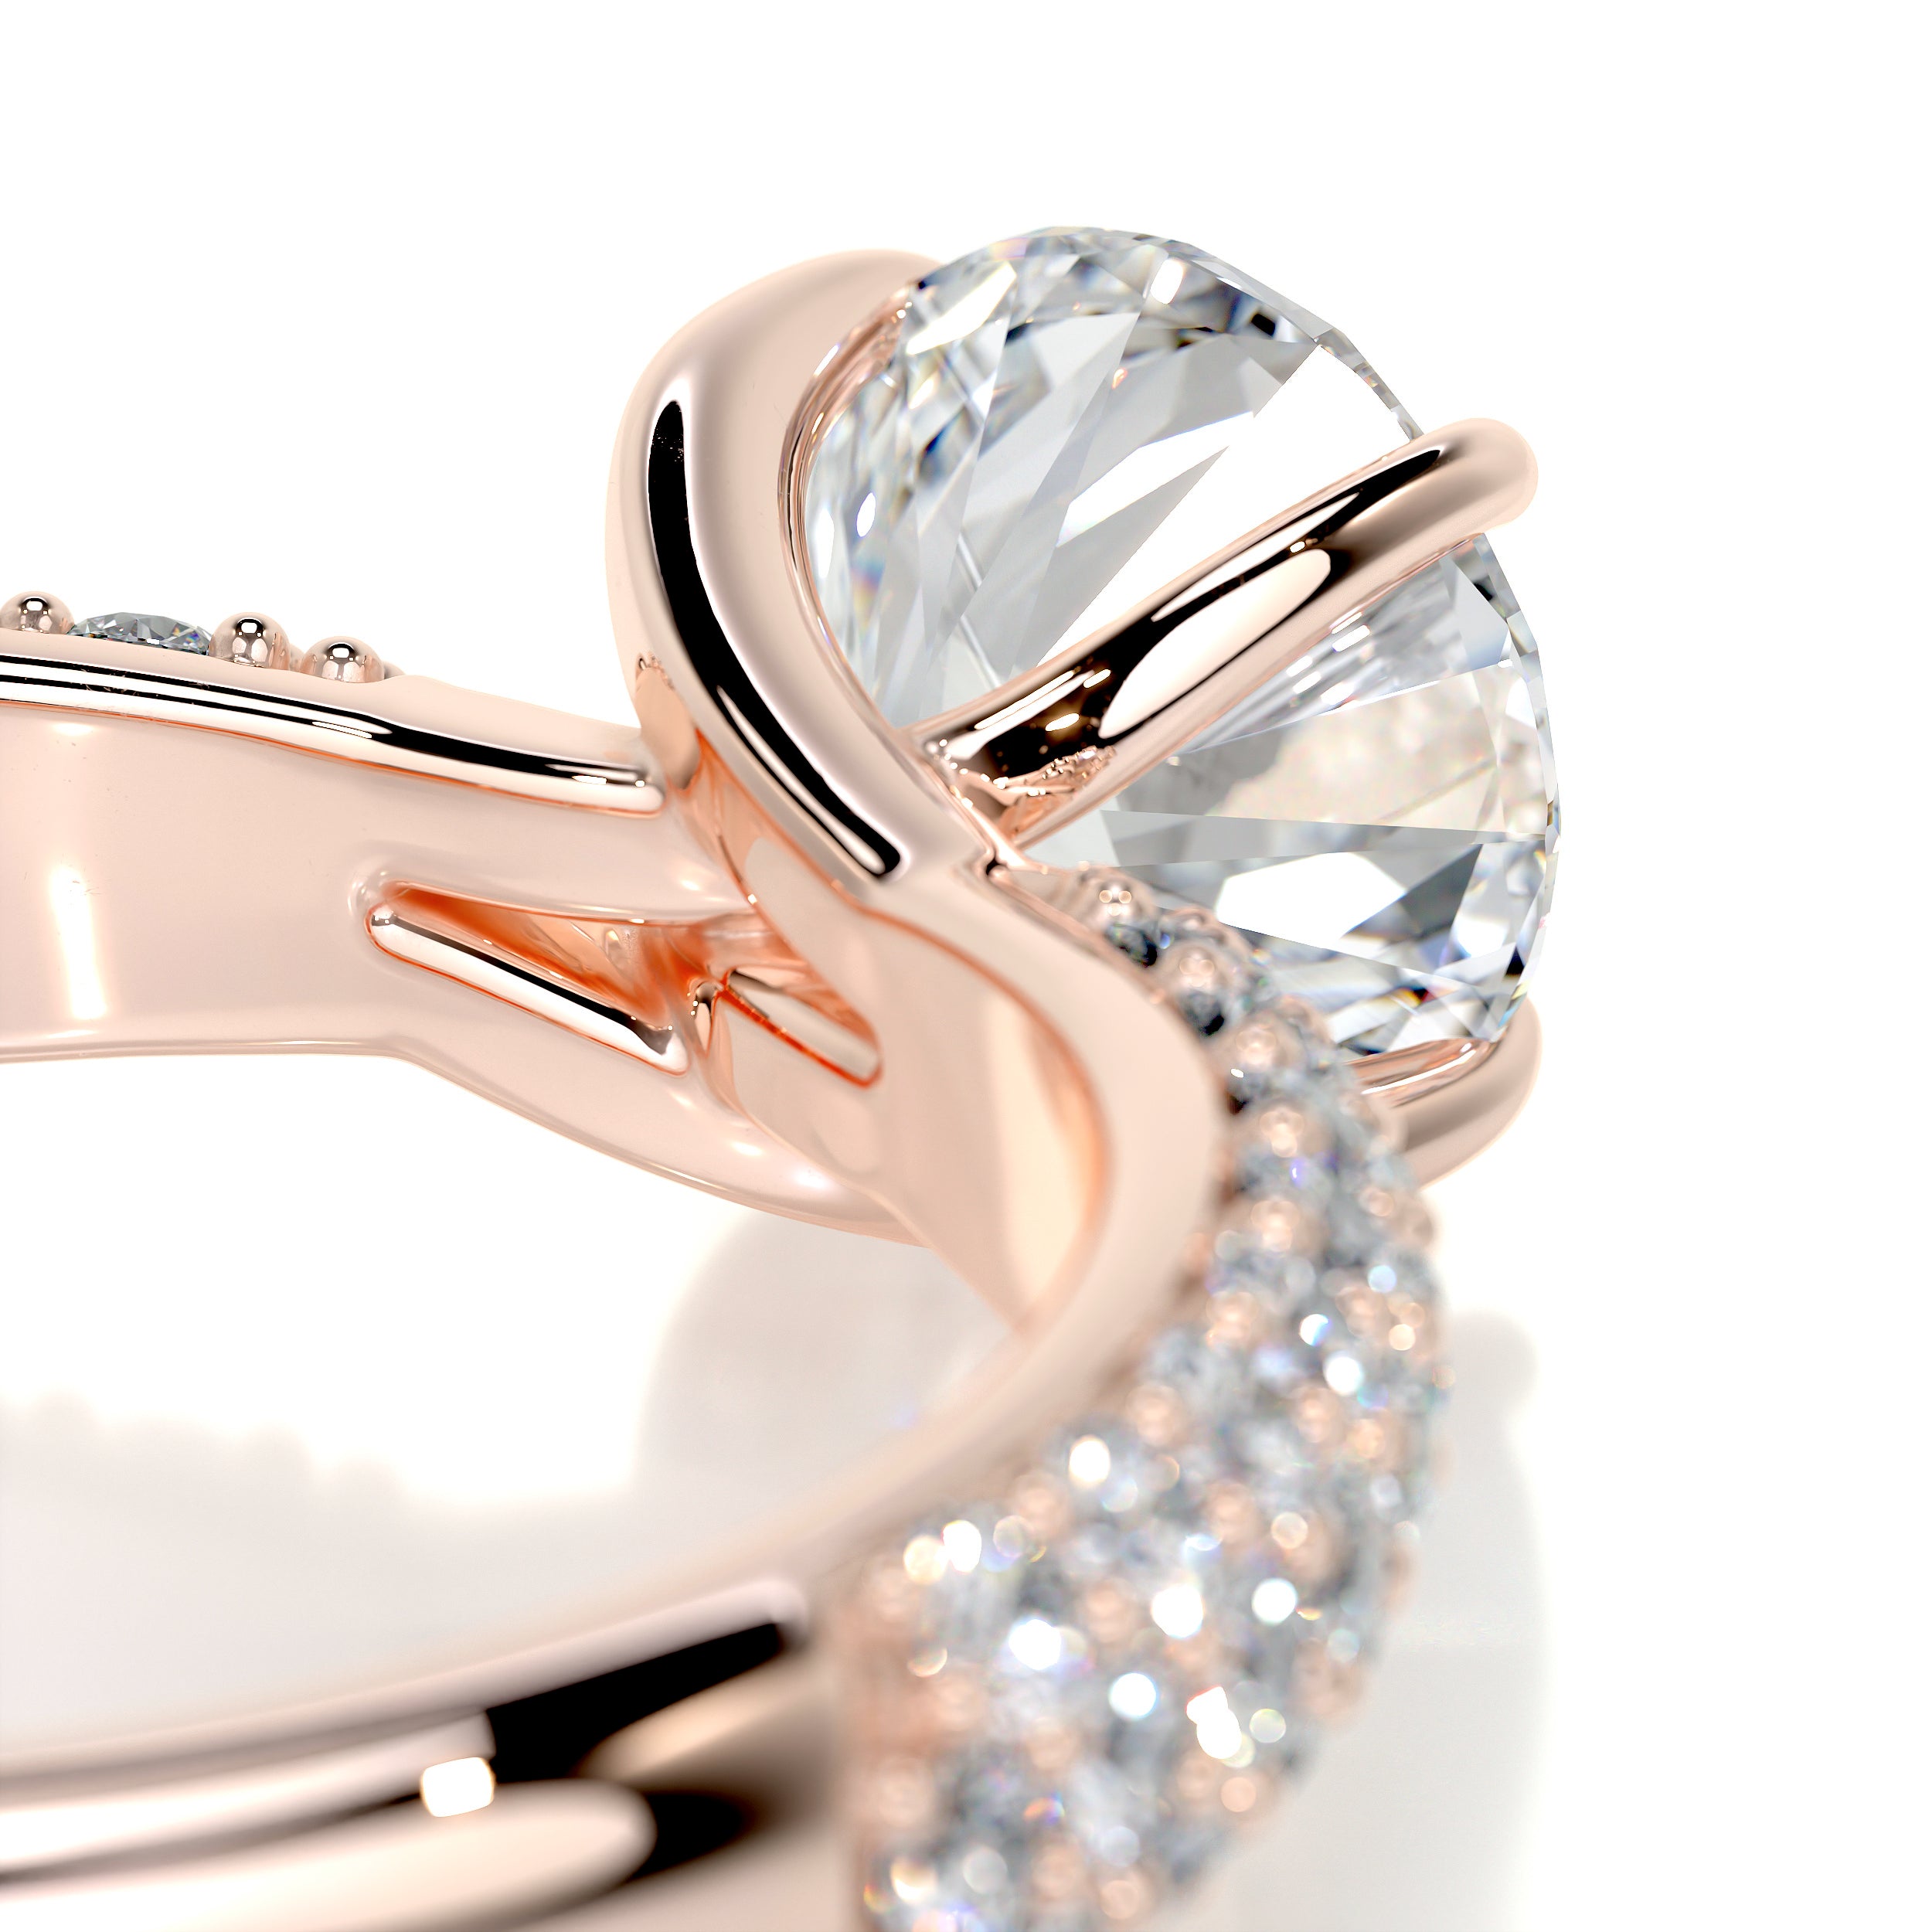 Alora Diamond Engagement Ring   (1.5 Carat) -14K Rose Gold